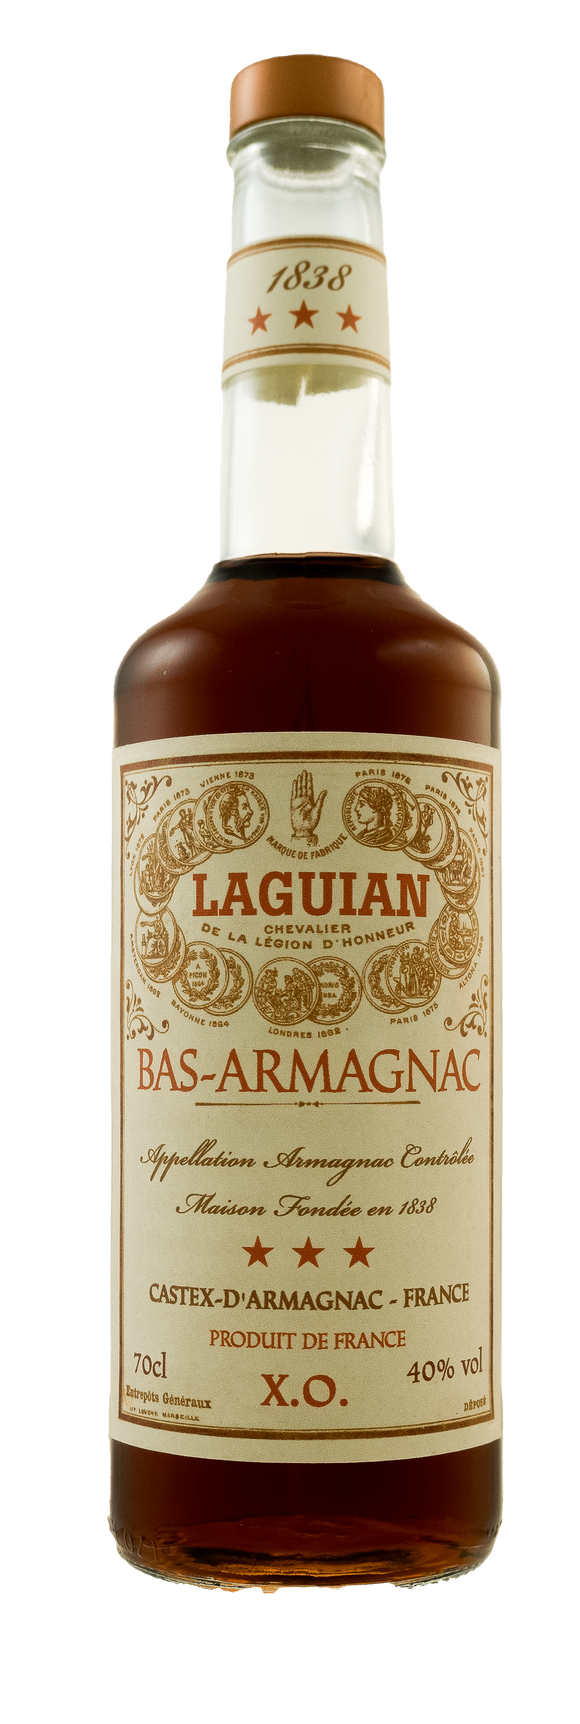 Bas-Armagnac